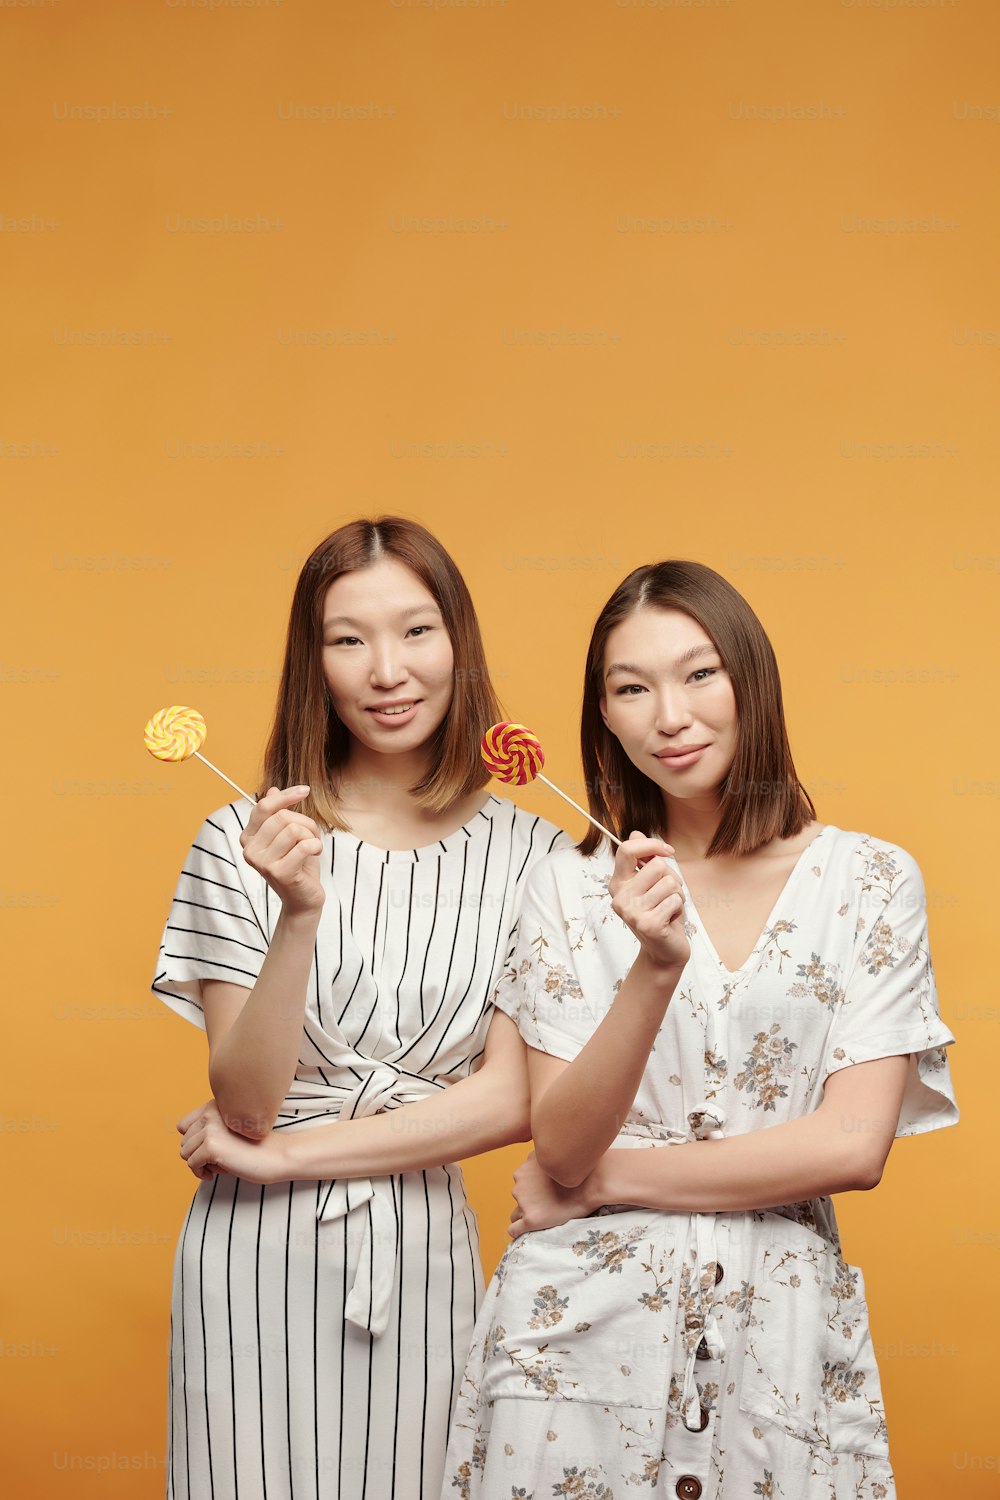 Giovani gemelle felici di etnia asiatica con lecca-lecca che ti guardano con sorrisi mentre si trovano davanti alla telecamera su sfondo giallo